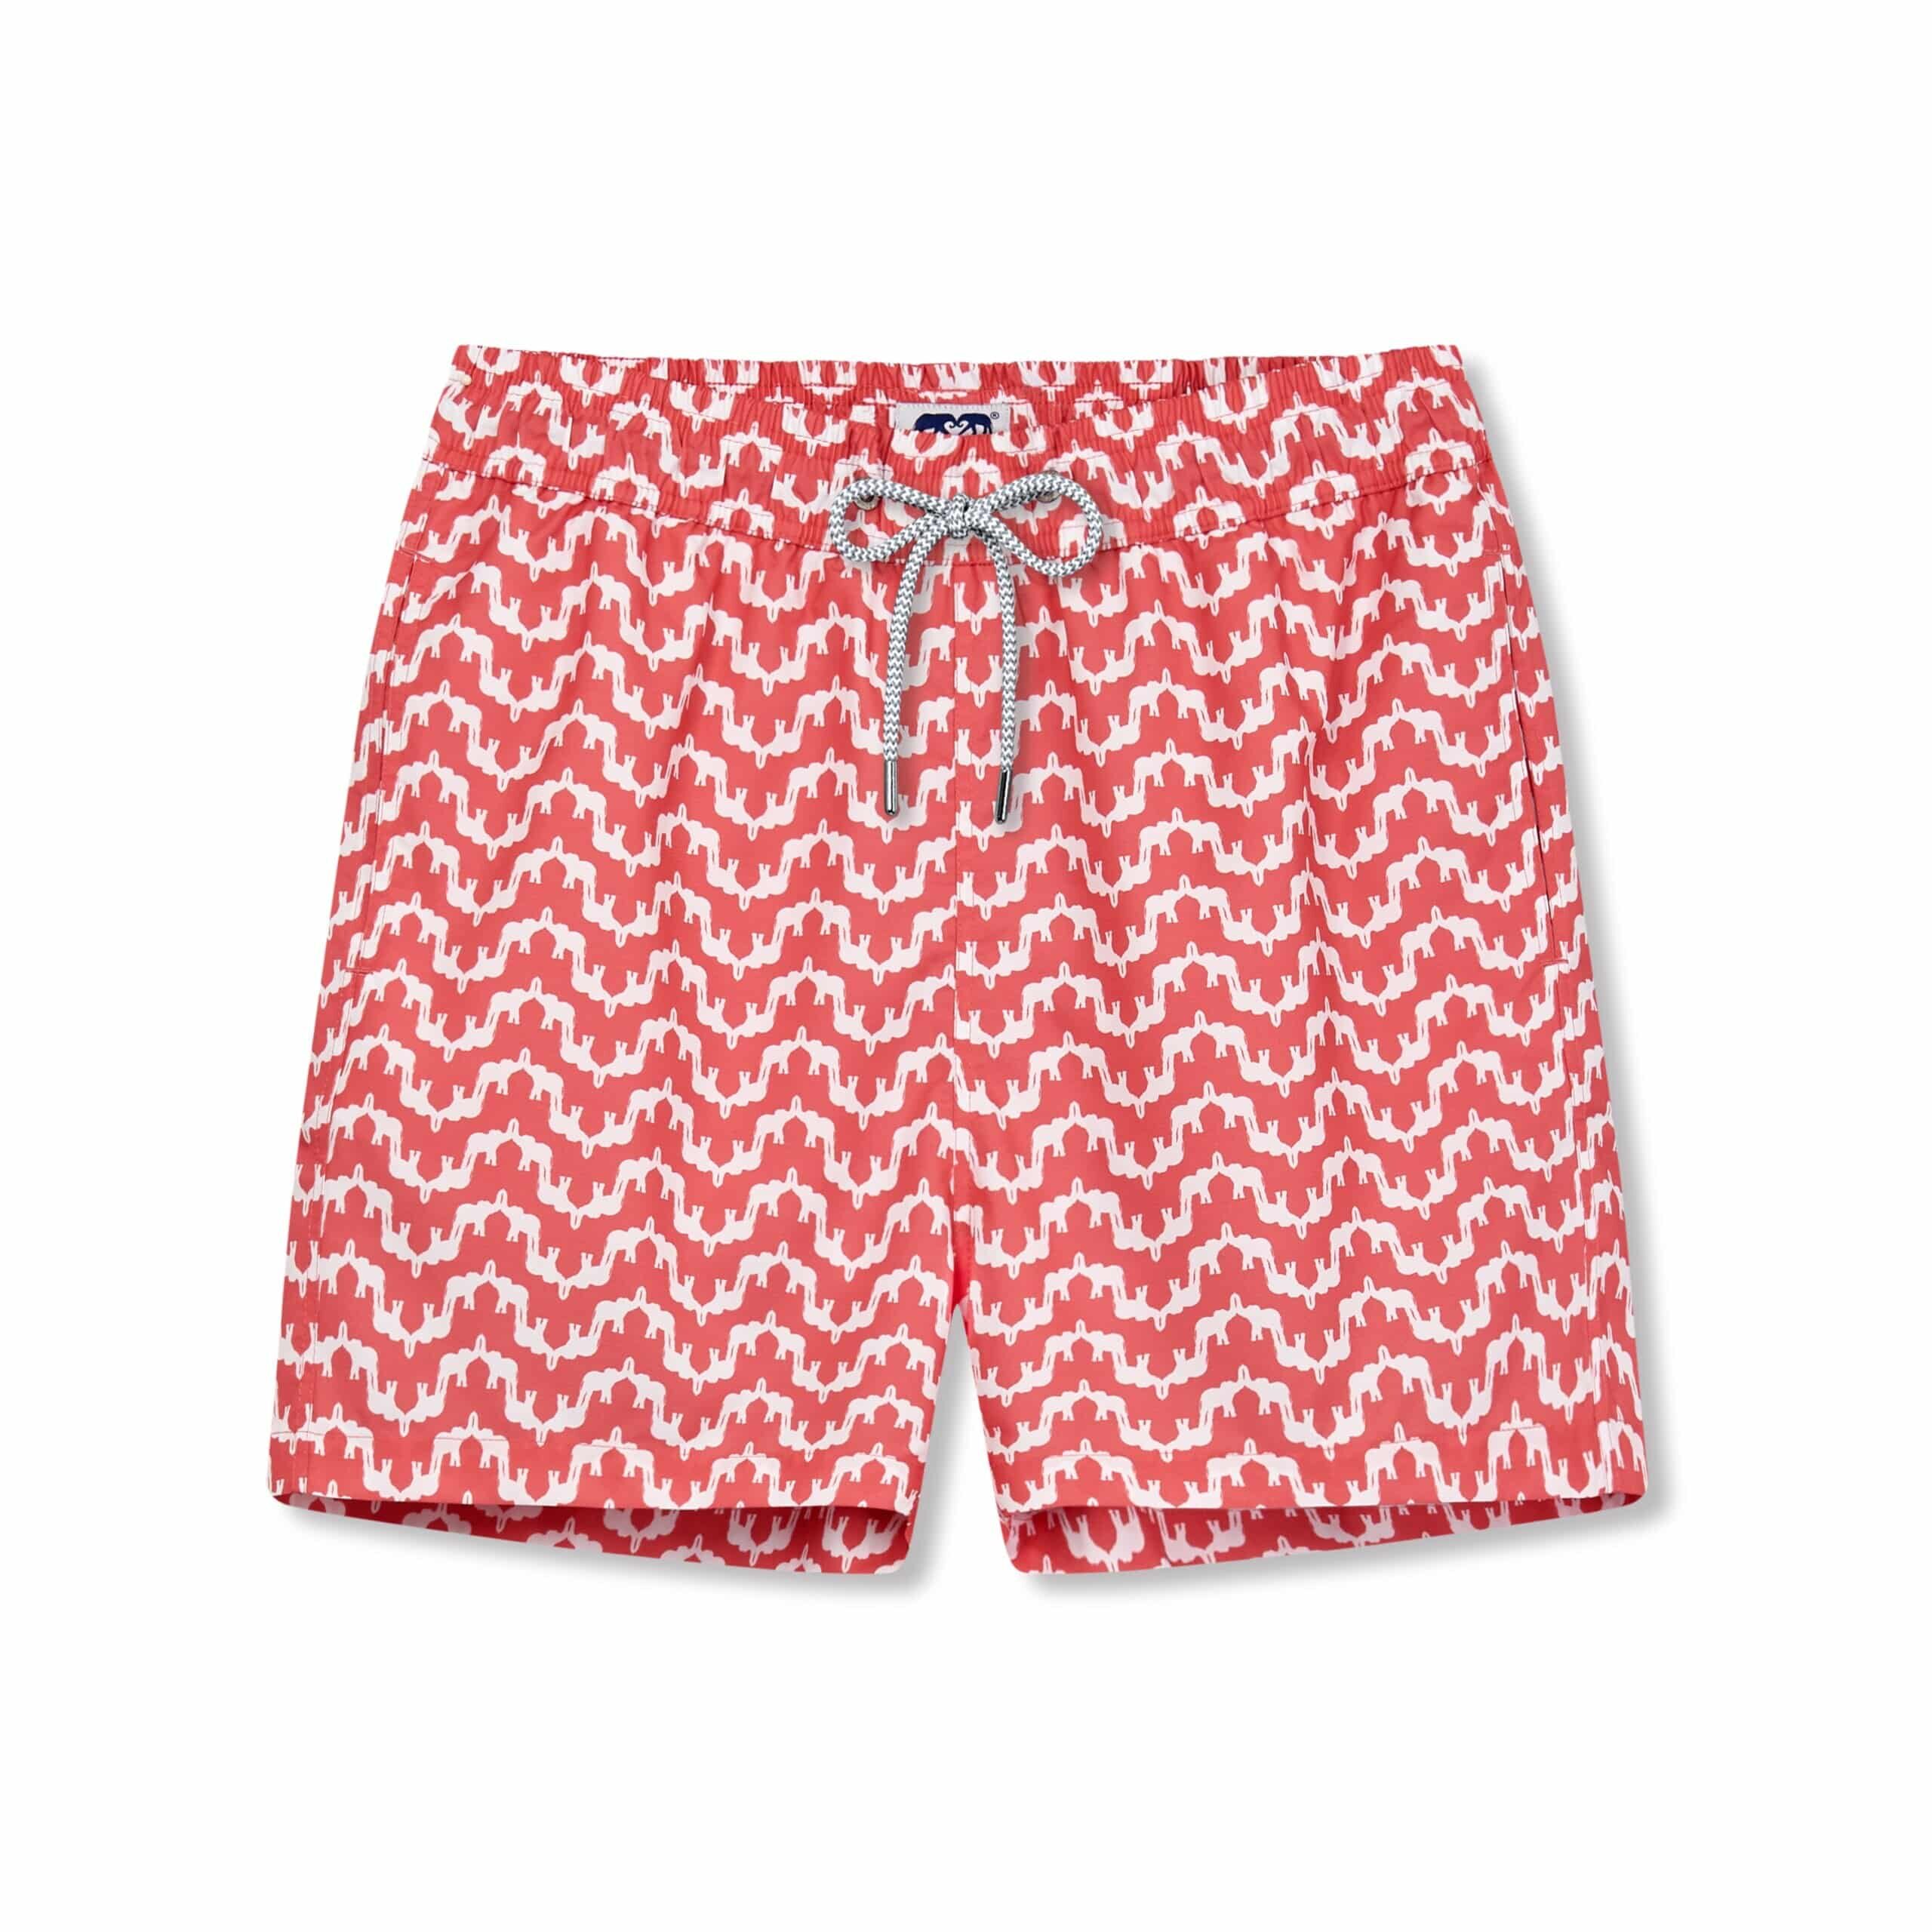 Elephant Swim Shorts -Red